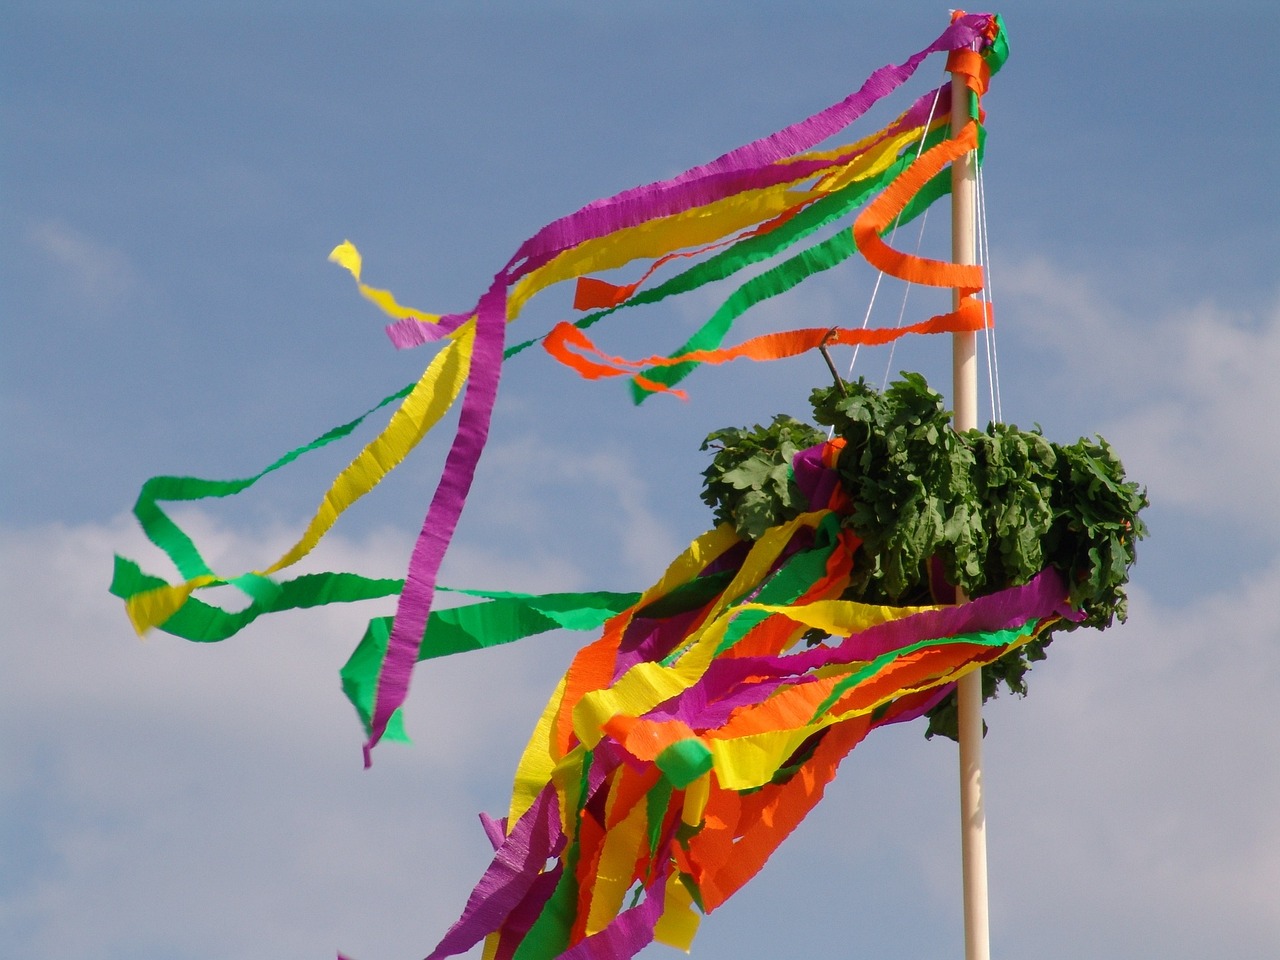 Das Richtfest ist alte und gute Tradition. Foto: Beeki via pixaba